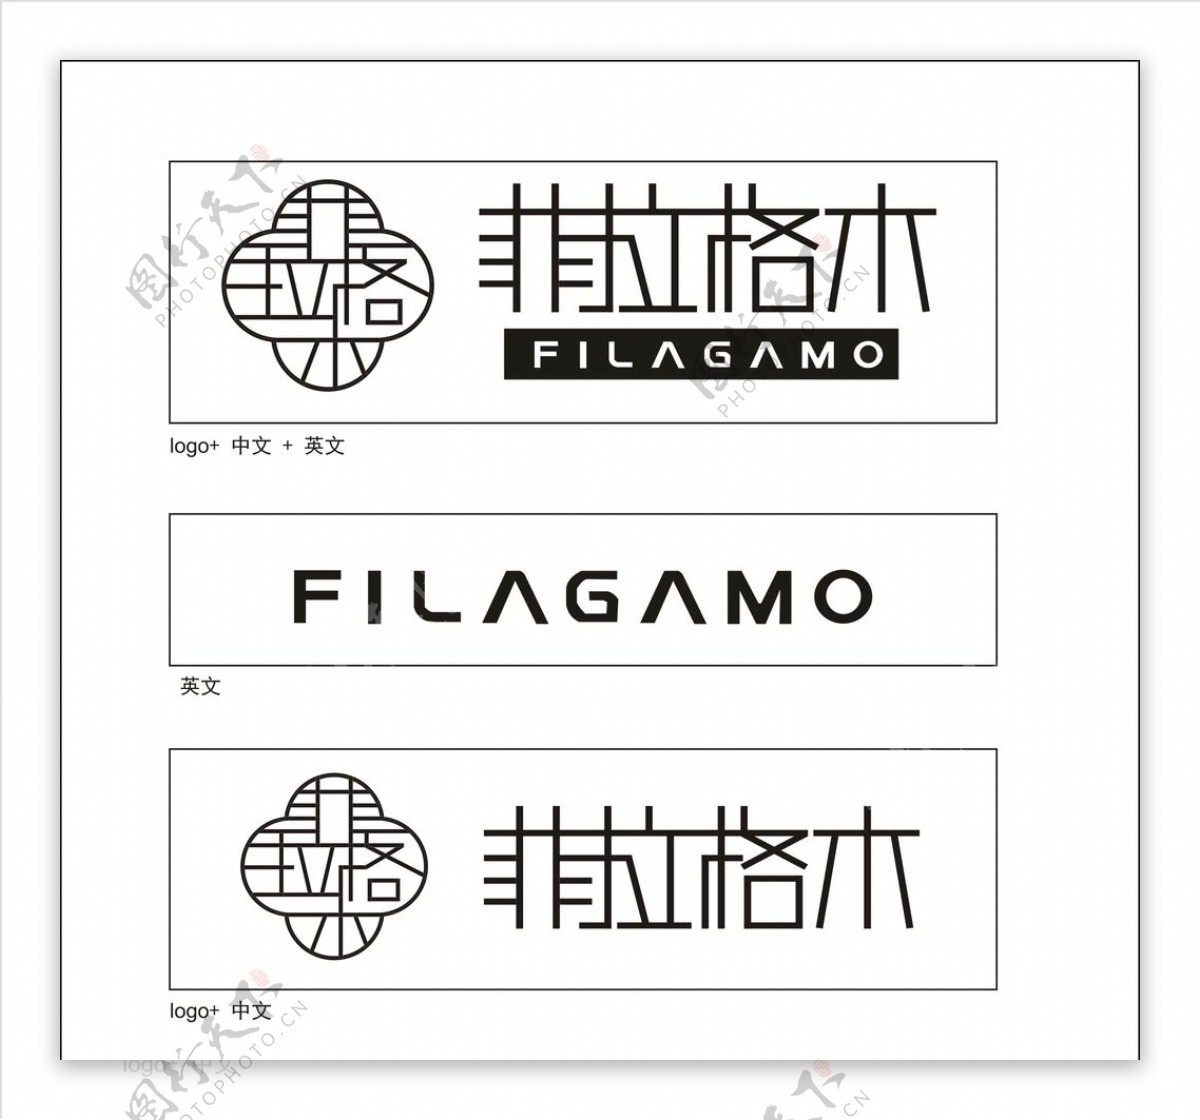 菲拉格木logo1菲拉